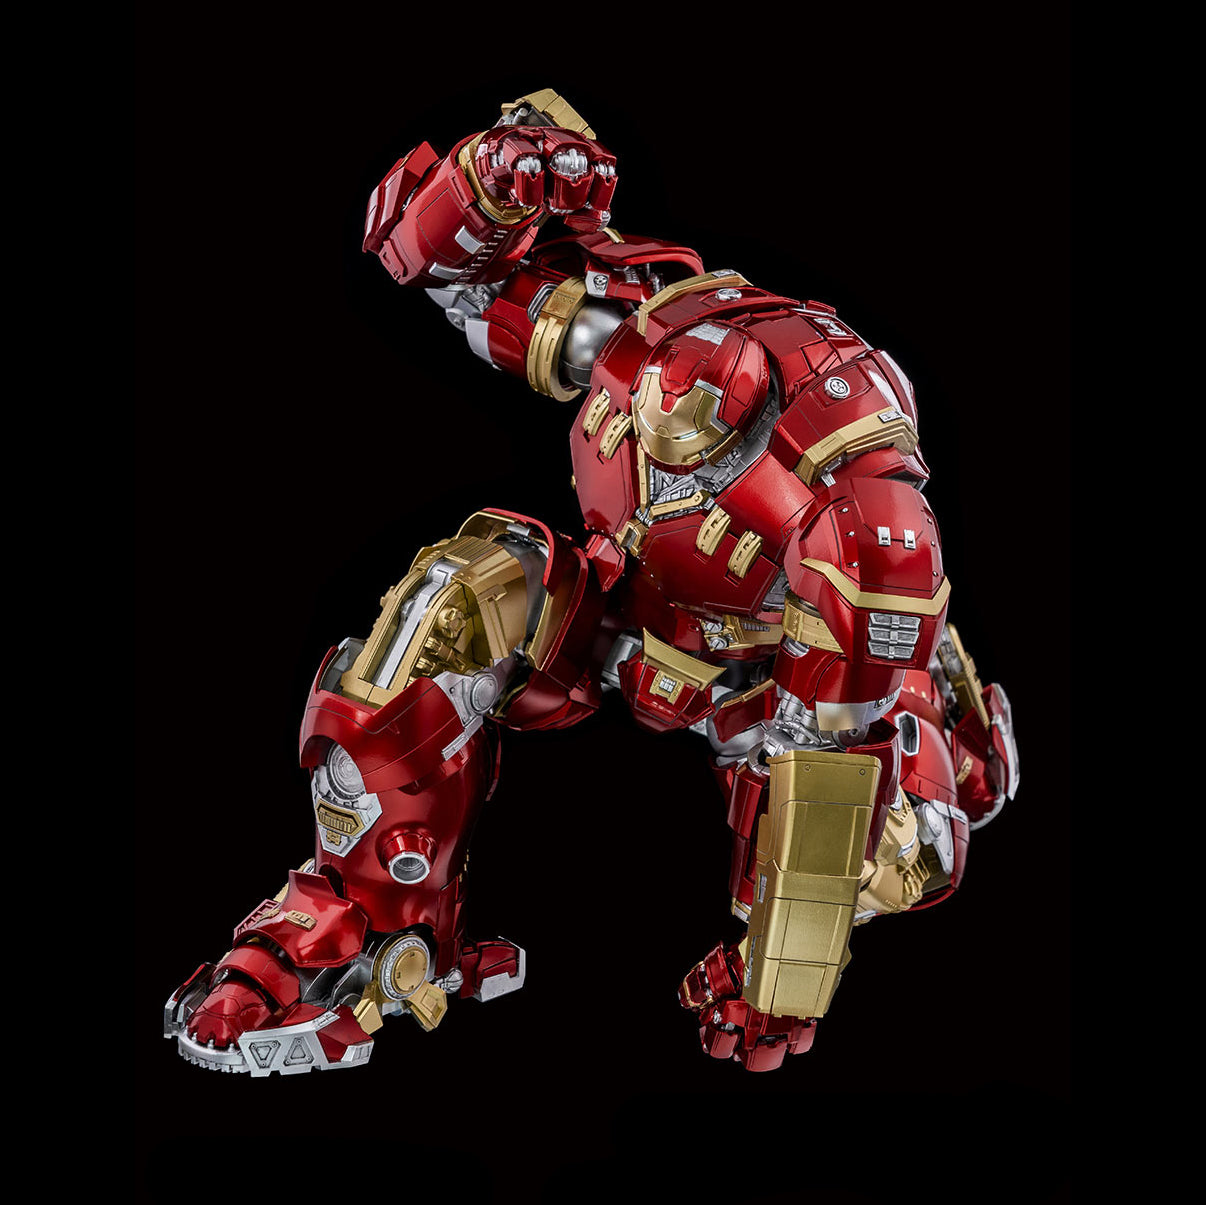 threezero - DLX - Marvel Studios: The Infinity Saga - Iron Man Mark XLIV Hulkbuster (1/12 Scale) (Reissue) - Marvelous Toys